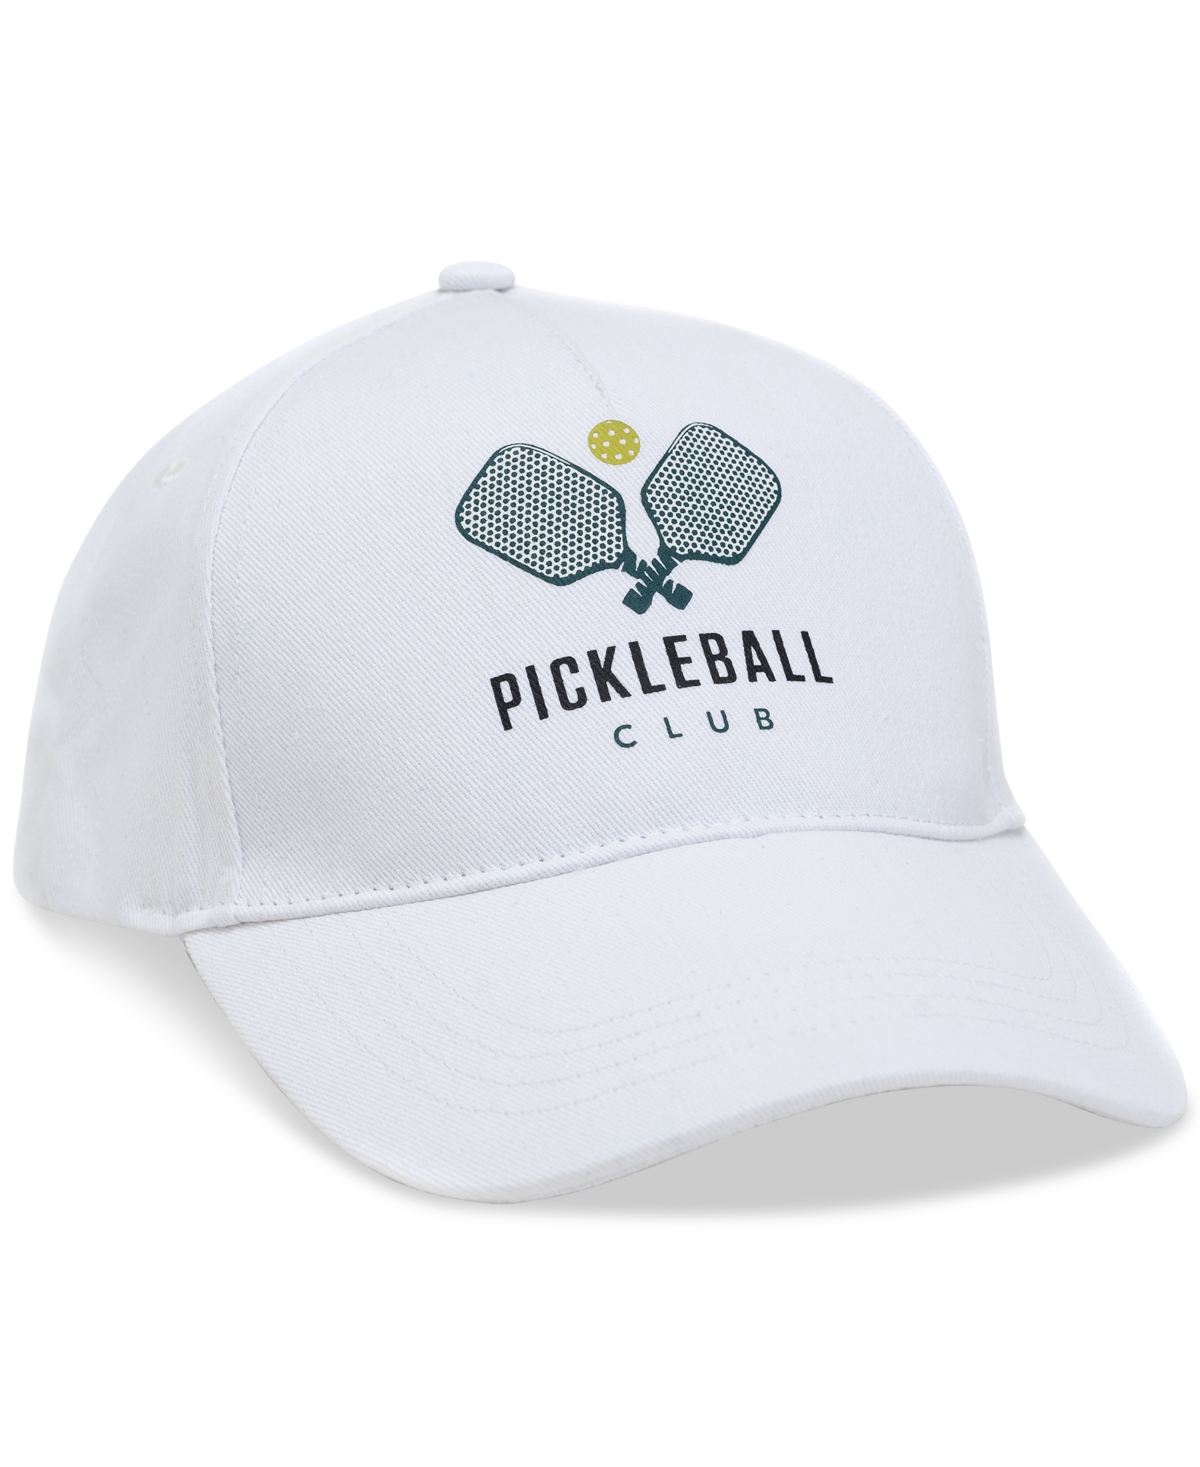 Women's Cotton Pickleball Baseball Cap, Created for Macy's - White